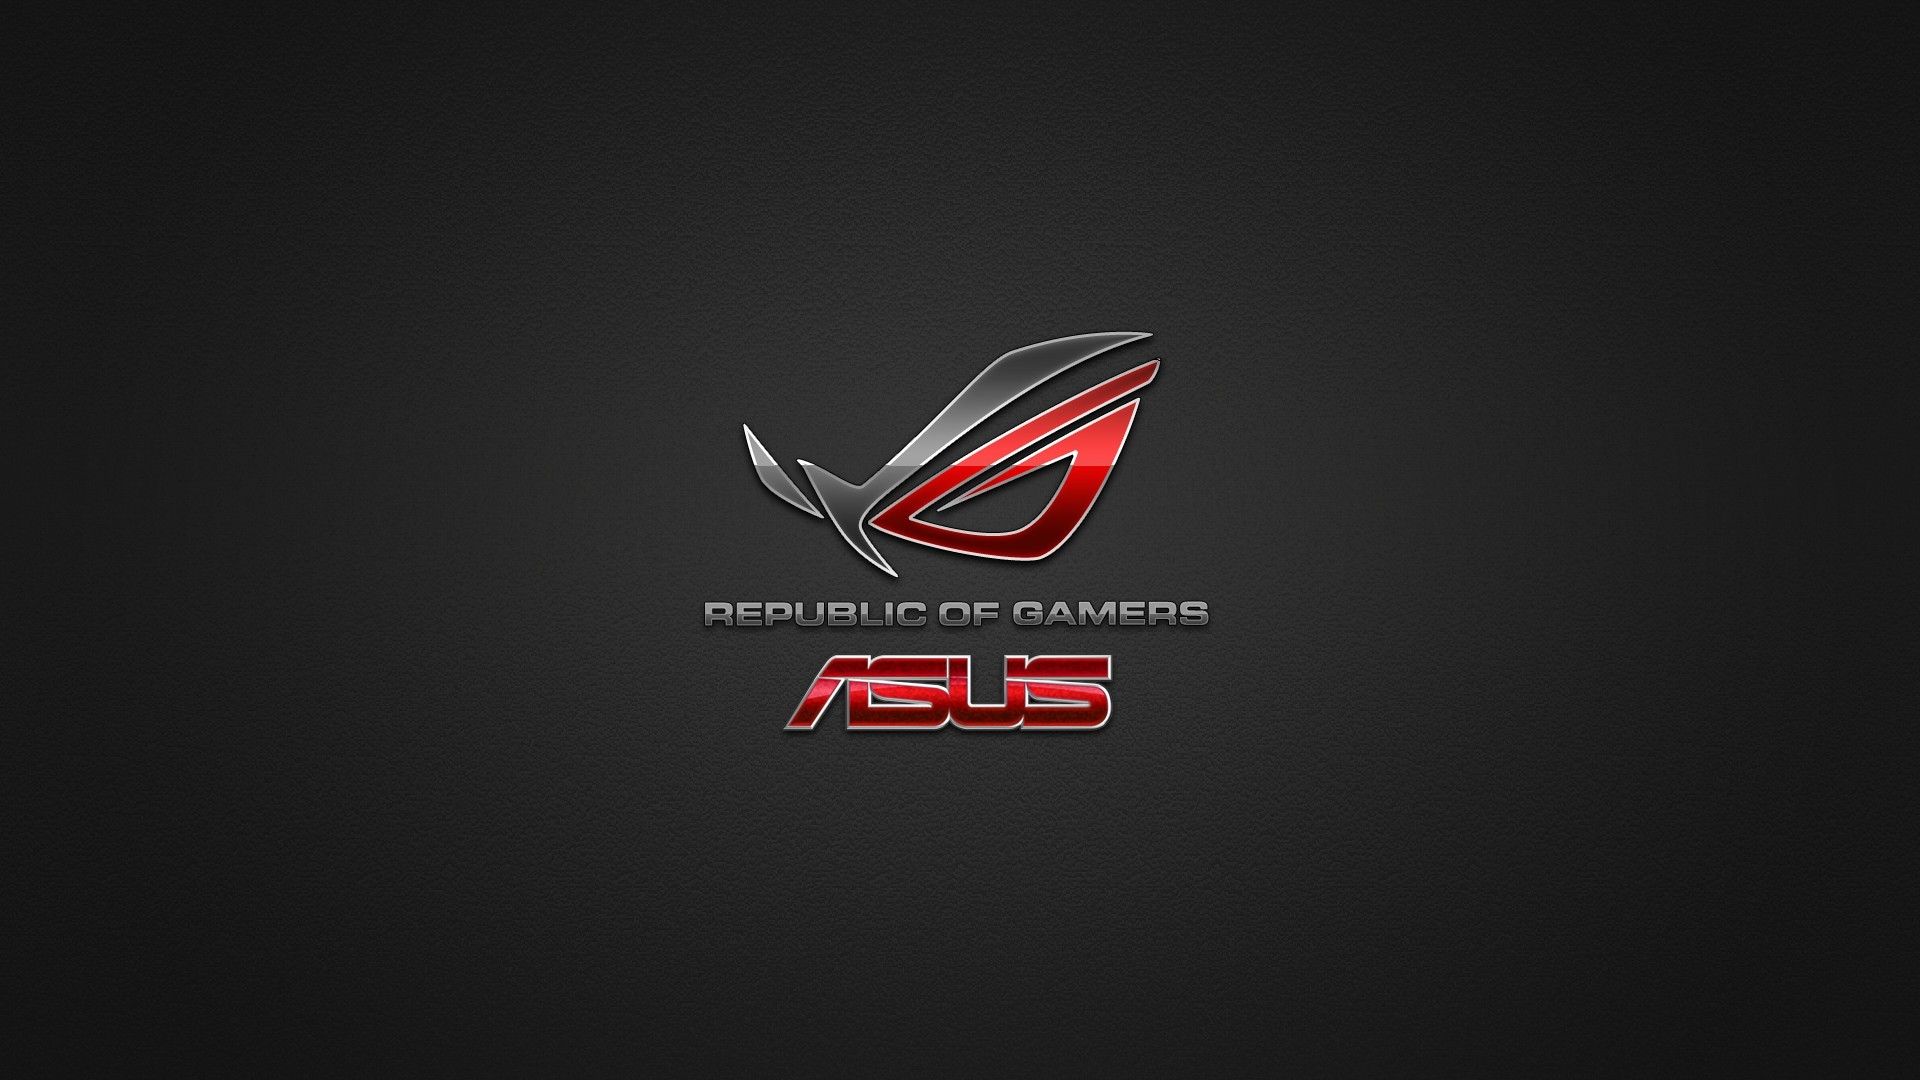 Beautiful Image Of Asus Rog Wallpaper Republic Gamers Logo Red